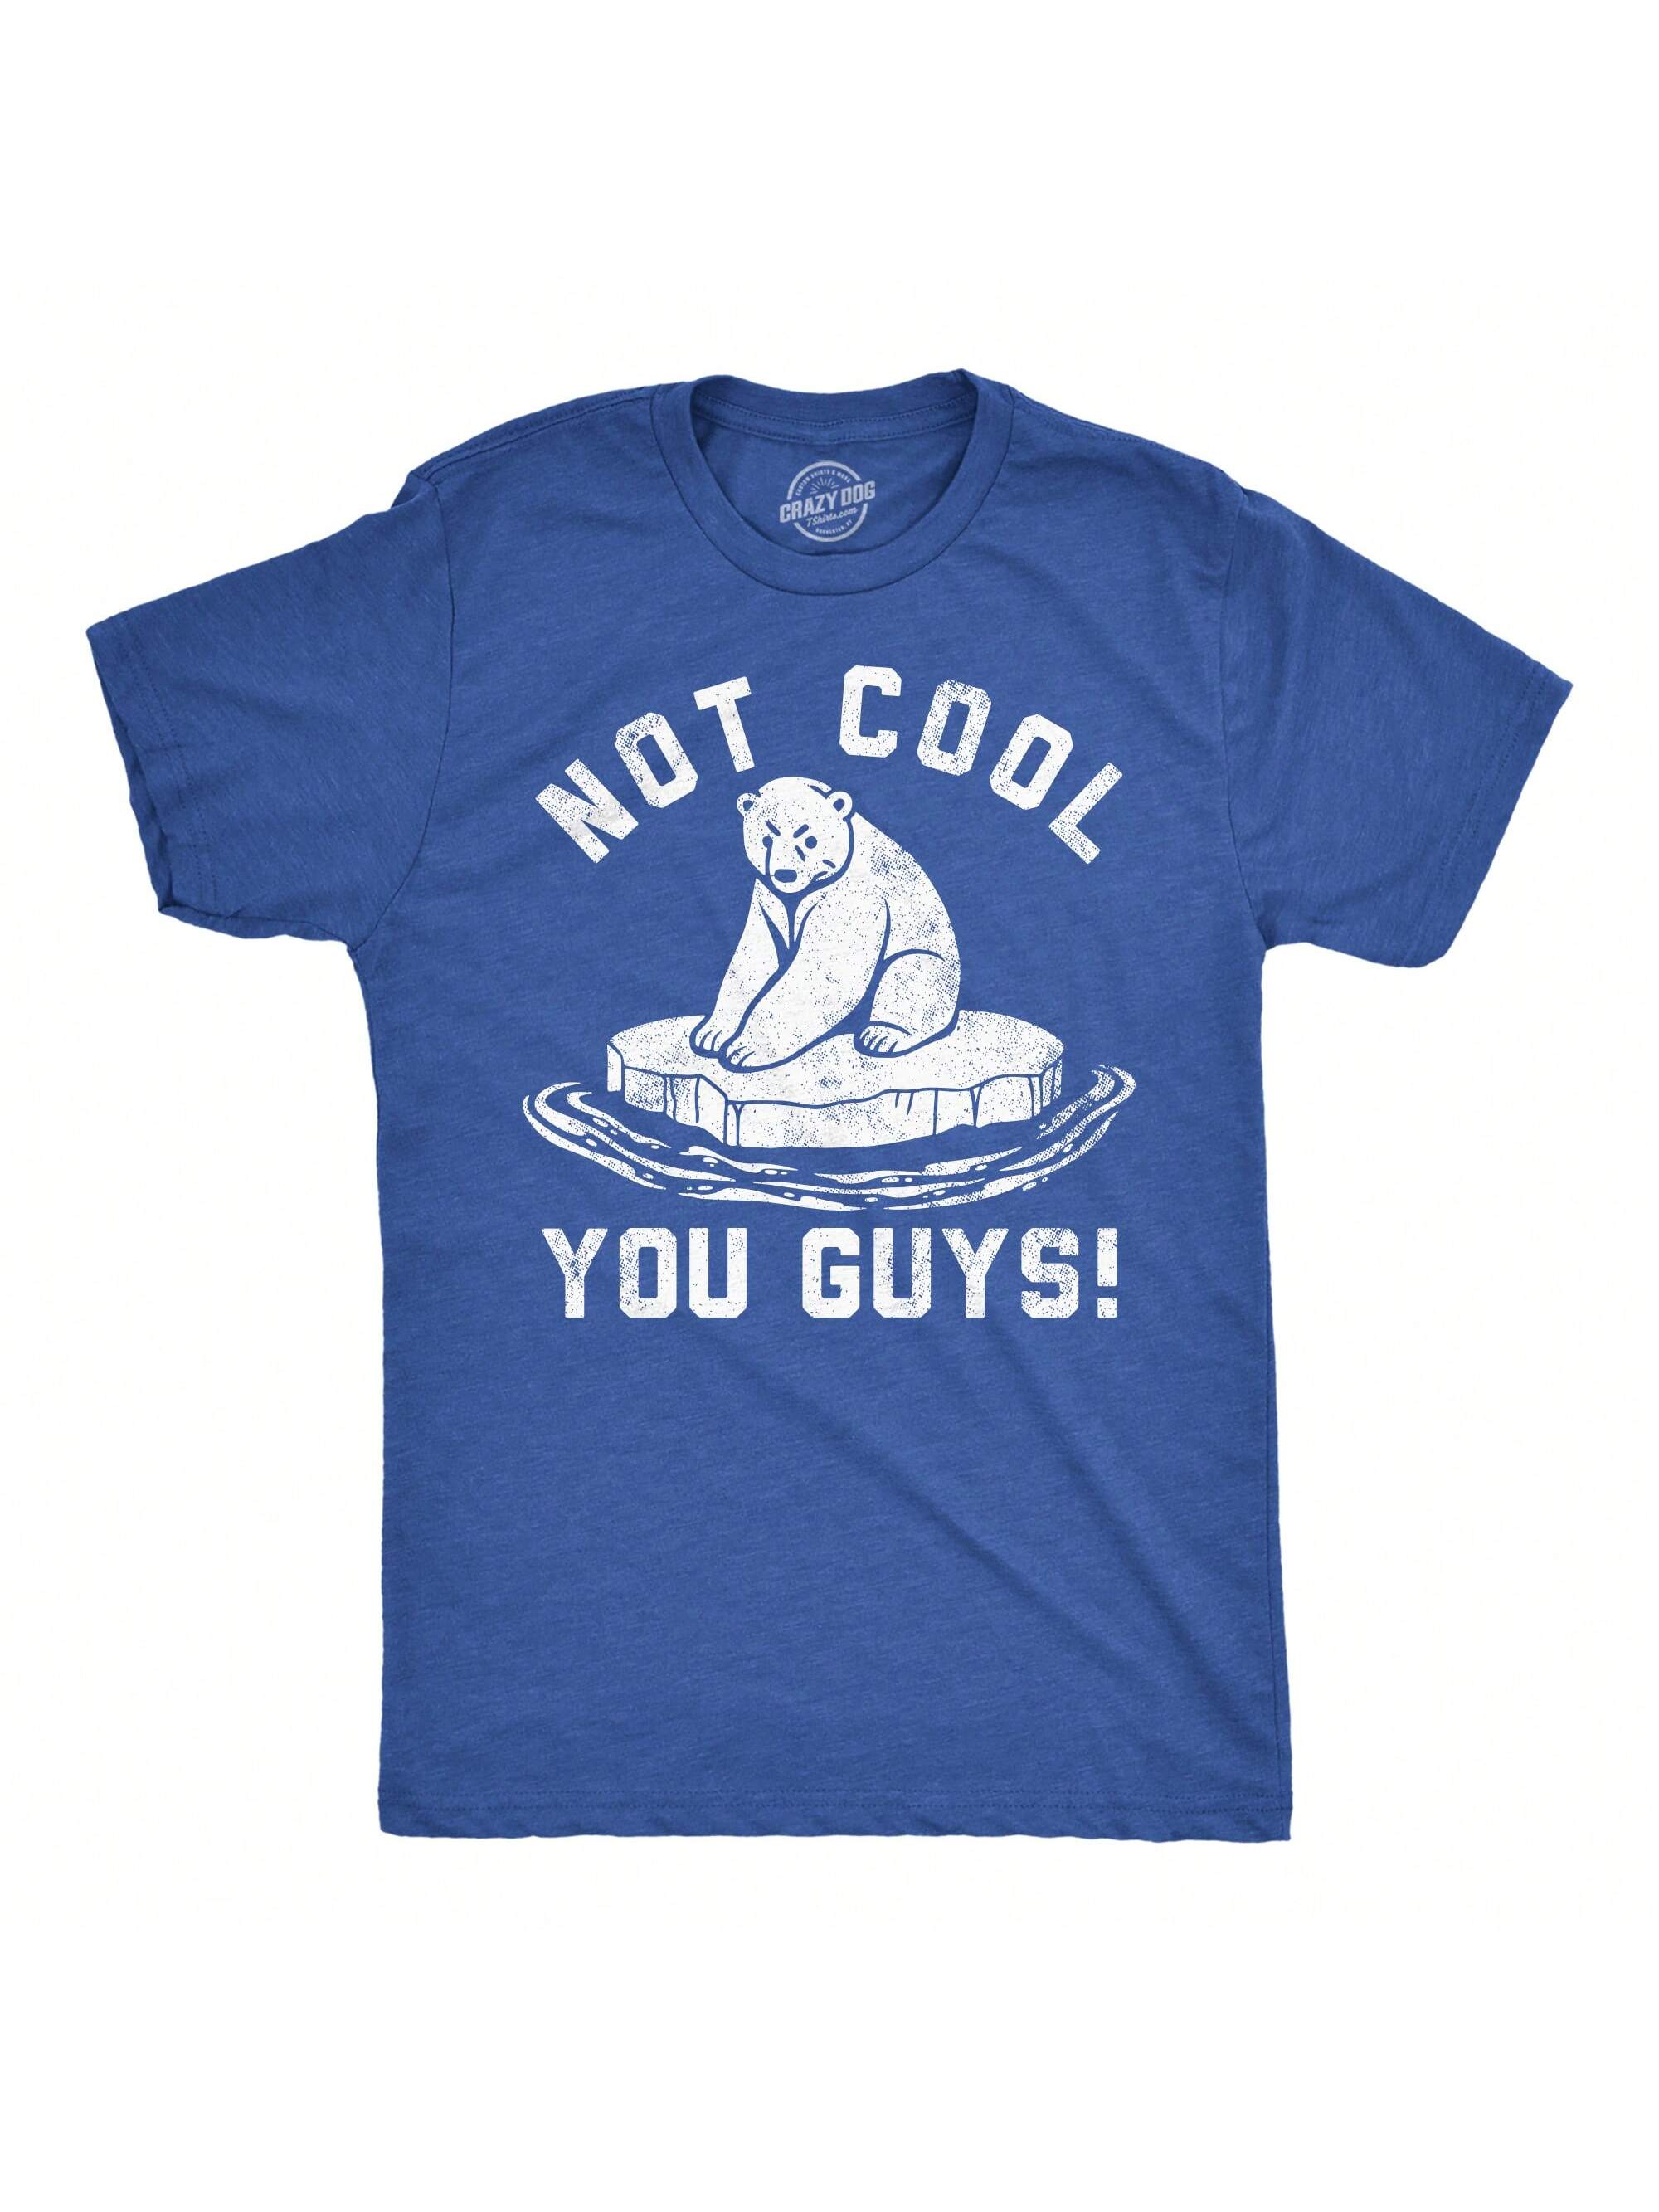 Мужские забавные футболки Not Cool You Guys Саркастическая футболка с белым медведем для парней (Heather Royal — Not Cool You Guys) парораспределительная труба polar bear polar bear la25 500